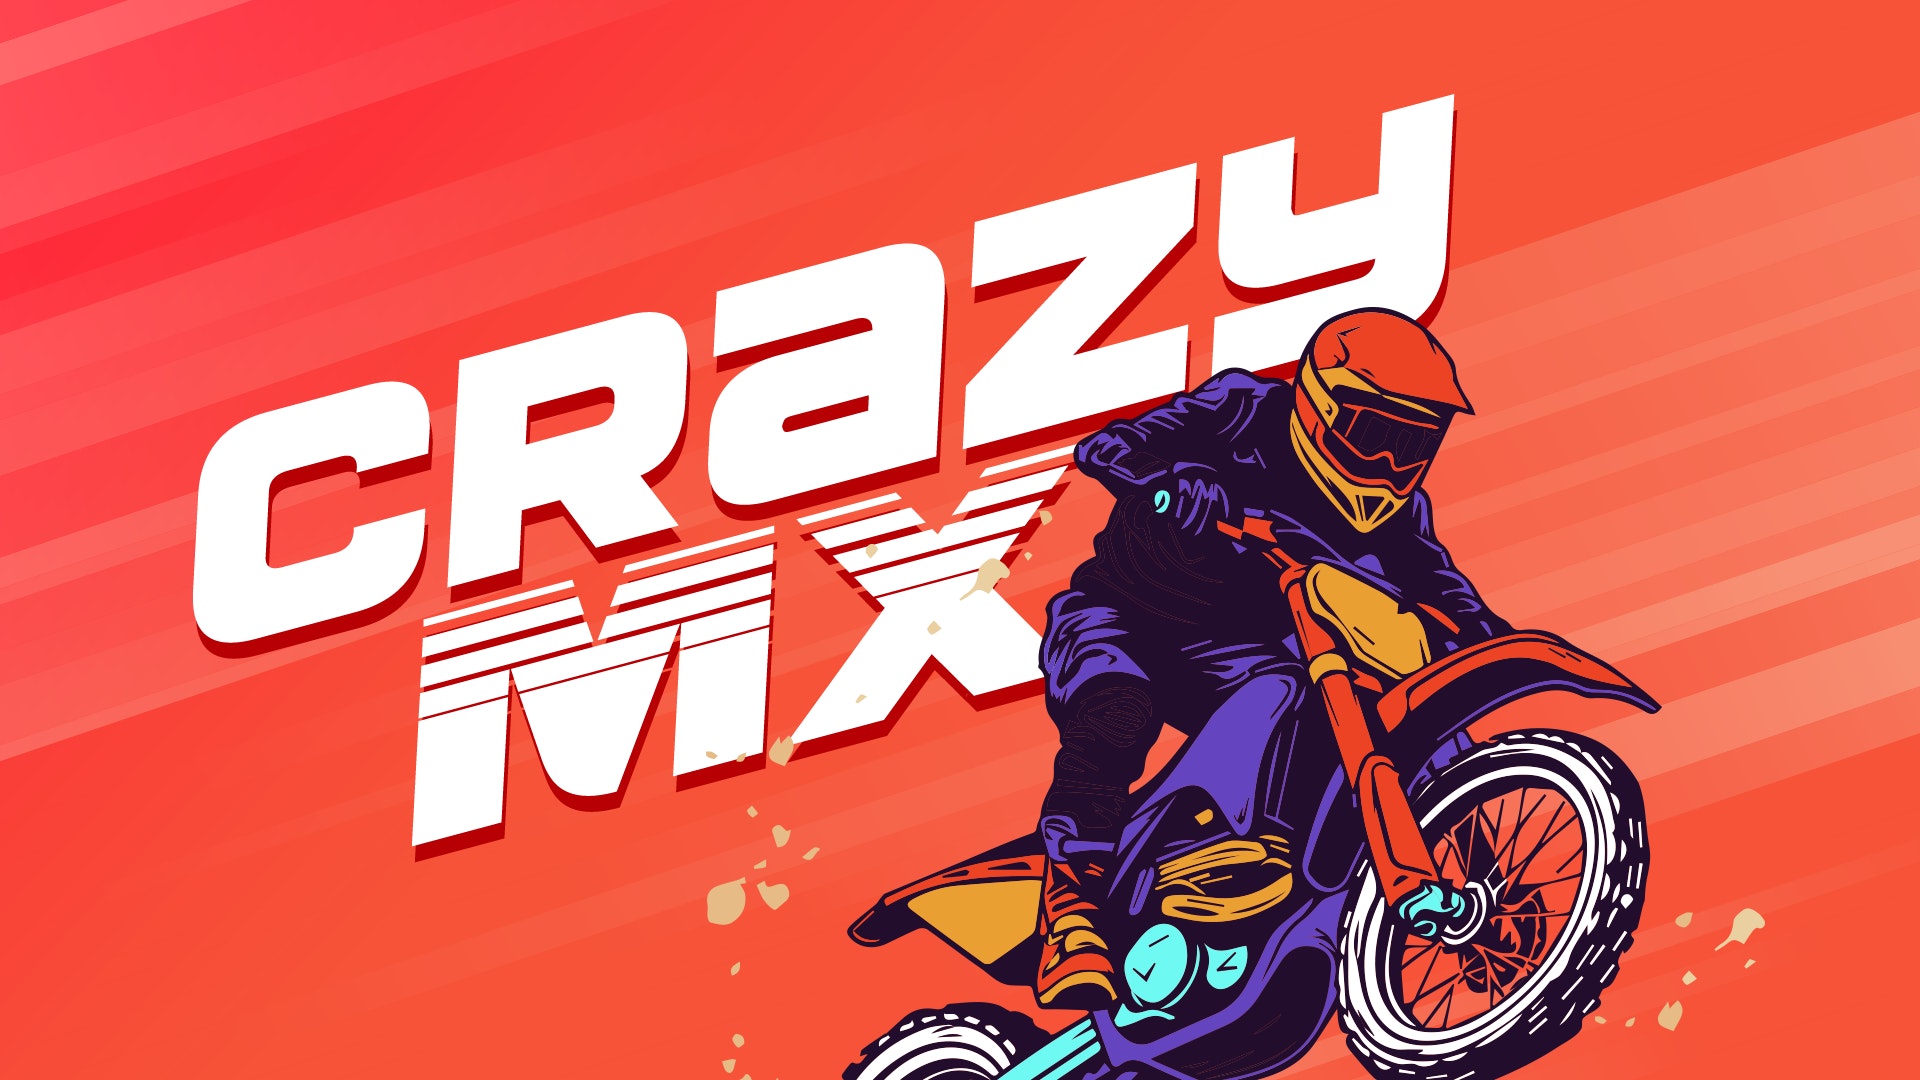 Crazy Stunt Cars 🕹️ Jogue no CrazyGames